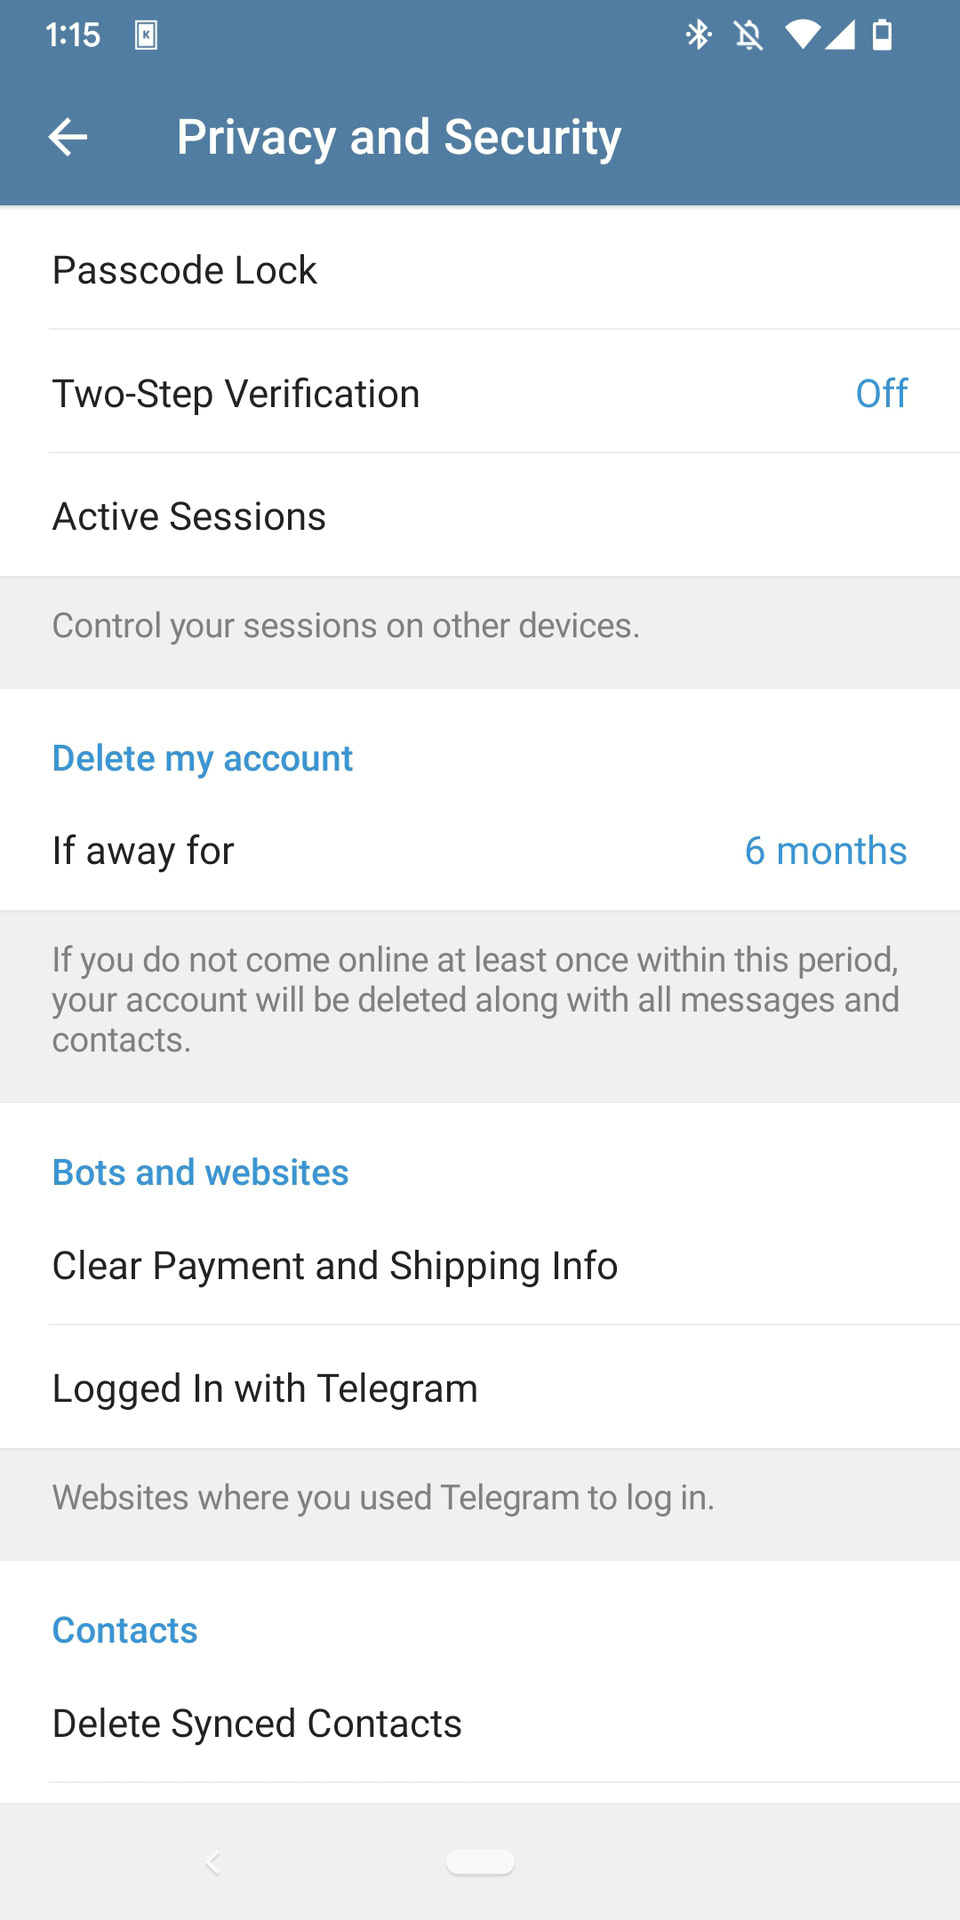 El menú de configuración de Telegram 'Privacidad y seguridad' se abre con la sección 'Eliminar mi cuenta' visible debajo de la cual se lee 'Si estoy fuera por 6 meses'.